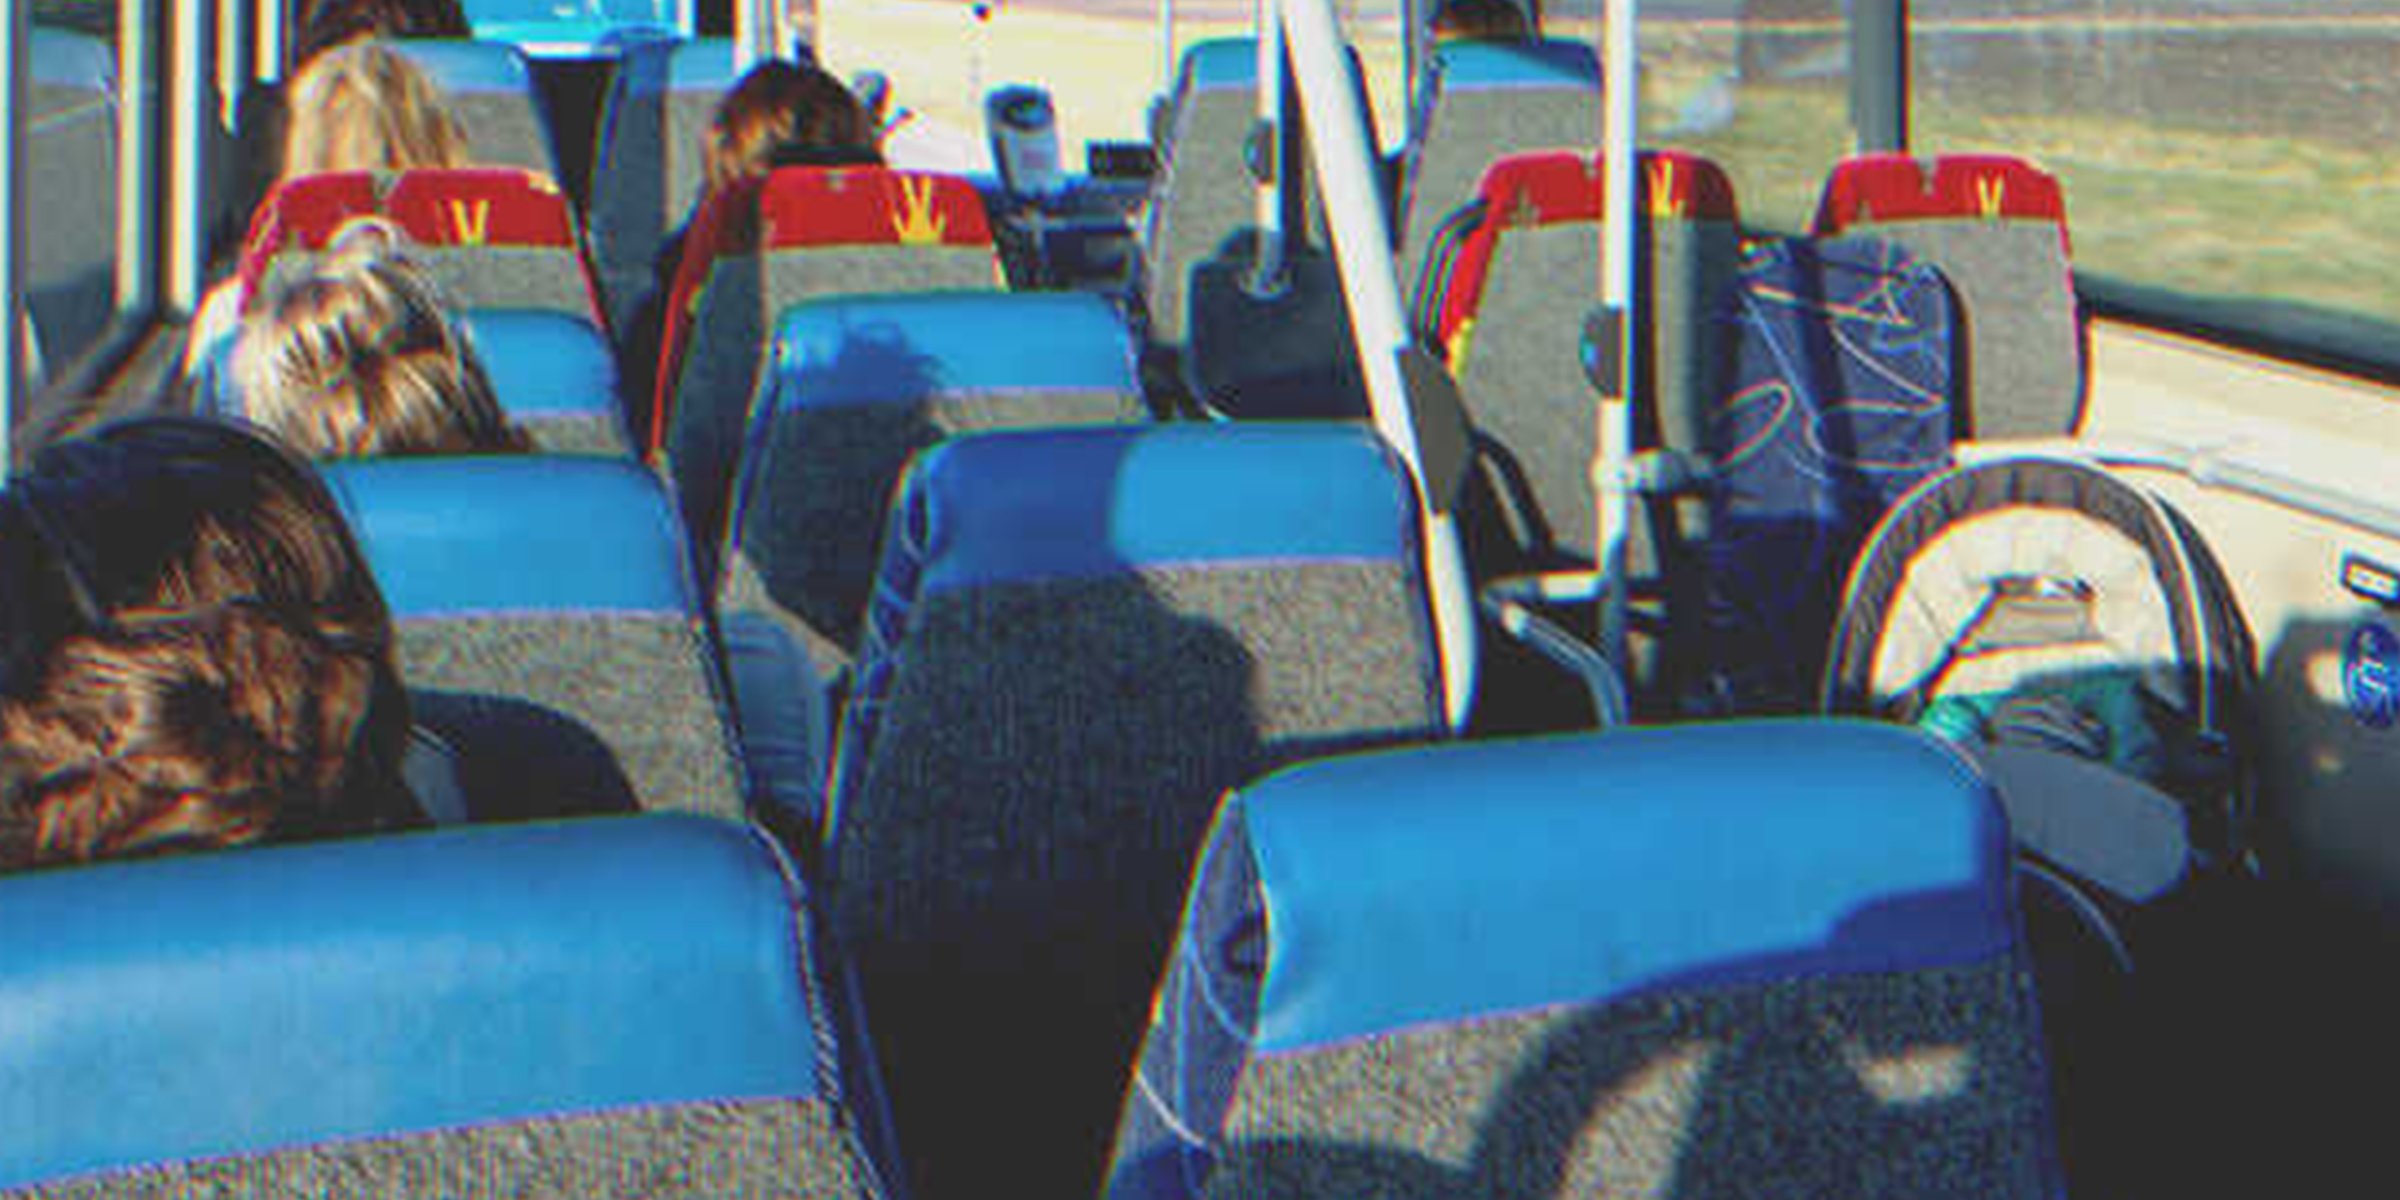 Varios asientos de autobús | Foto: Shutterstock